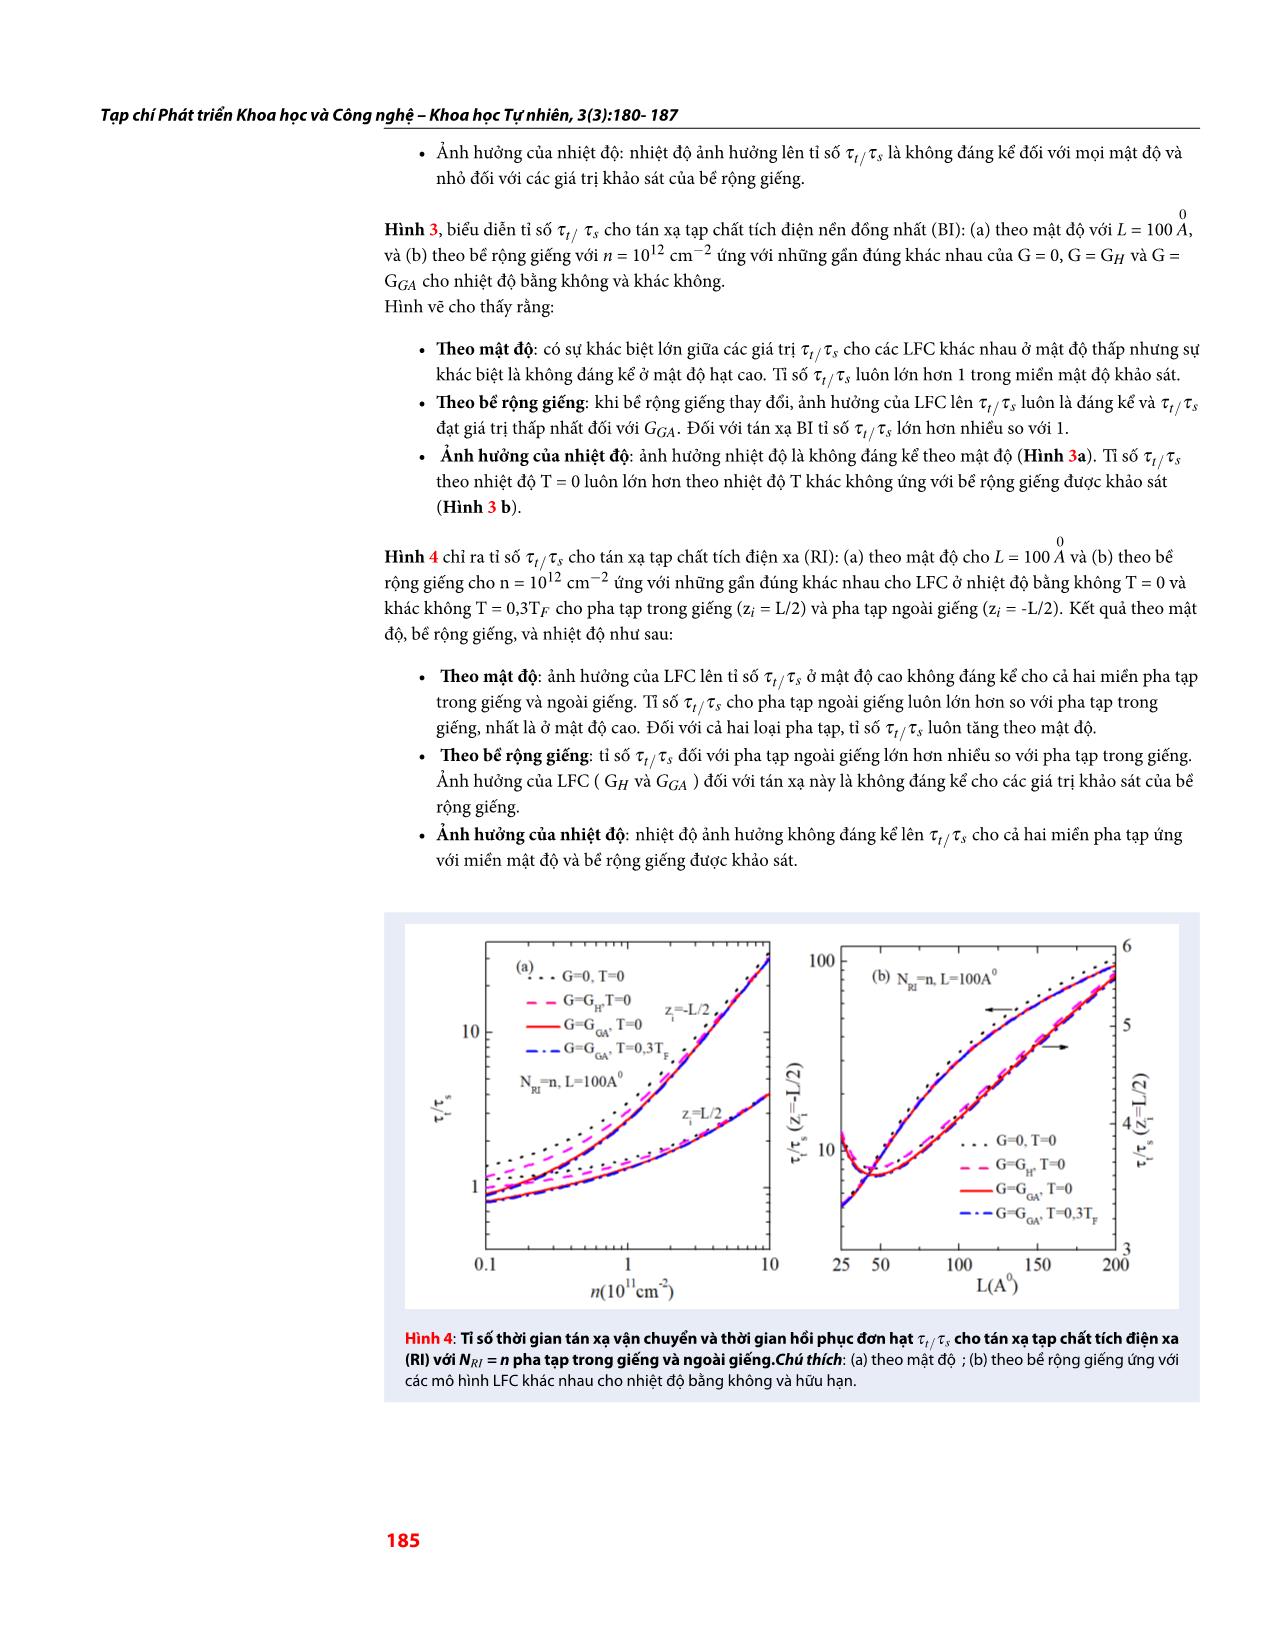 Thời gian tán xạ của điện tử trong giếng lượng tử GaAs/InGaAs/GaAs ở nhiệt độ hữu hạn có xét đến hiệu ứng tương quan trao đổi trang 6